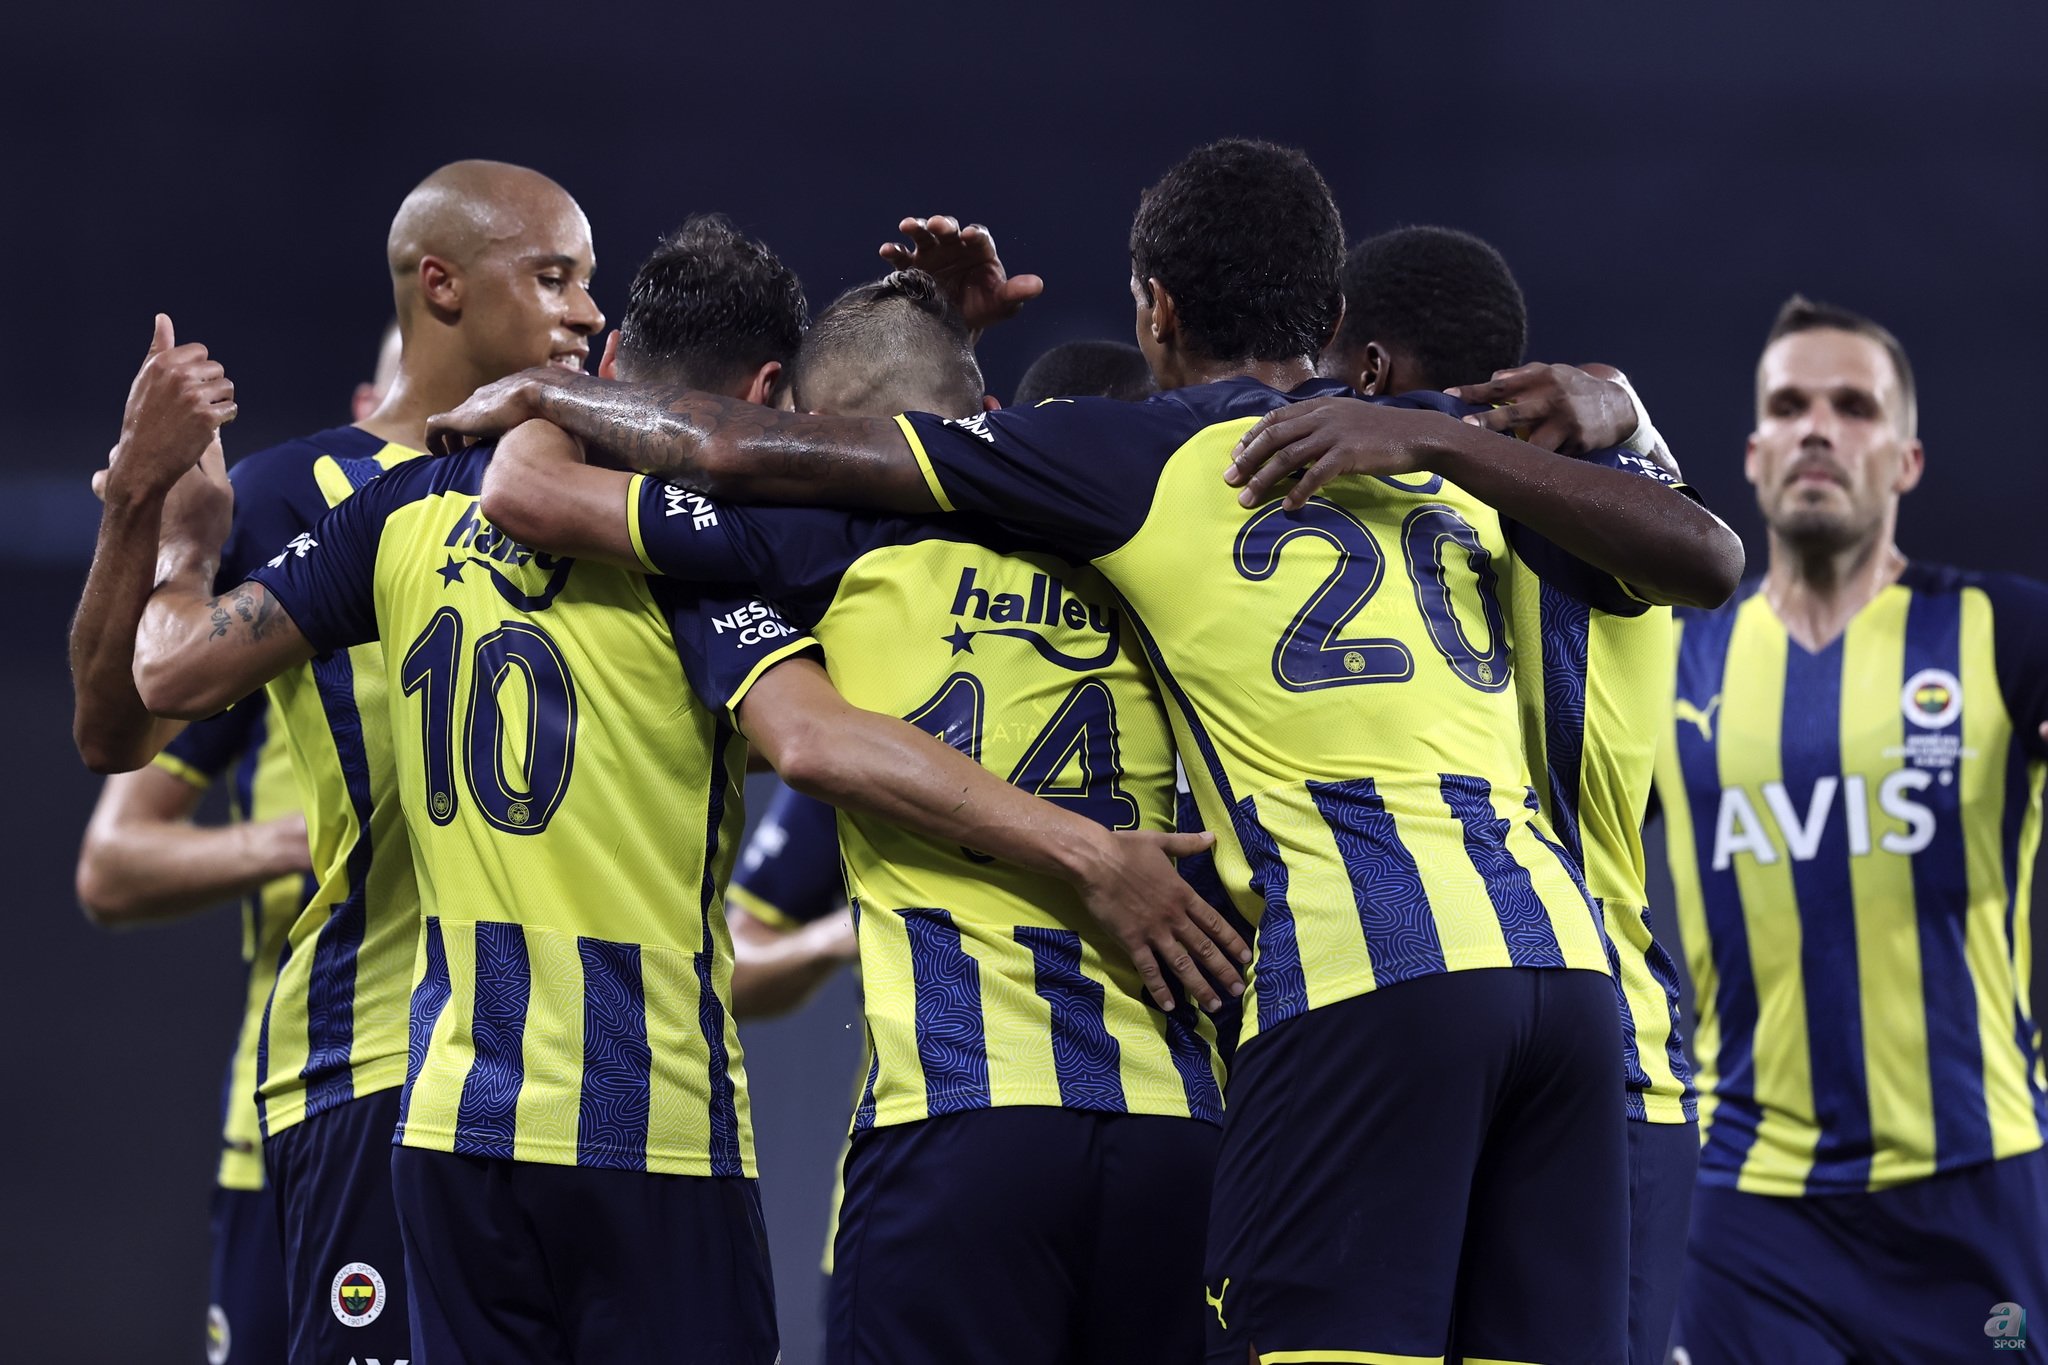 Fenerbahçe sezonu Adana da açıyor